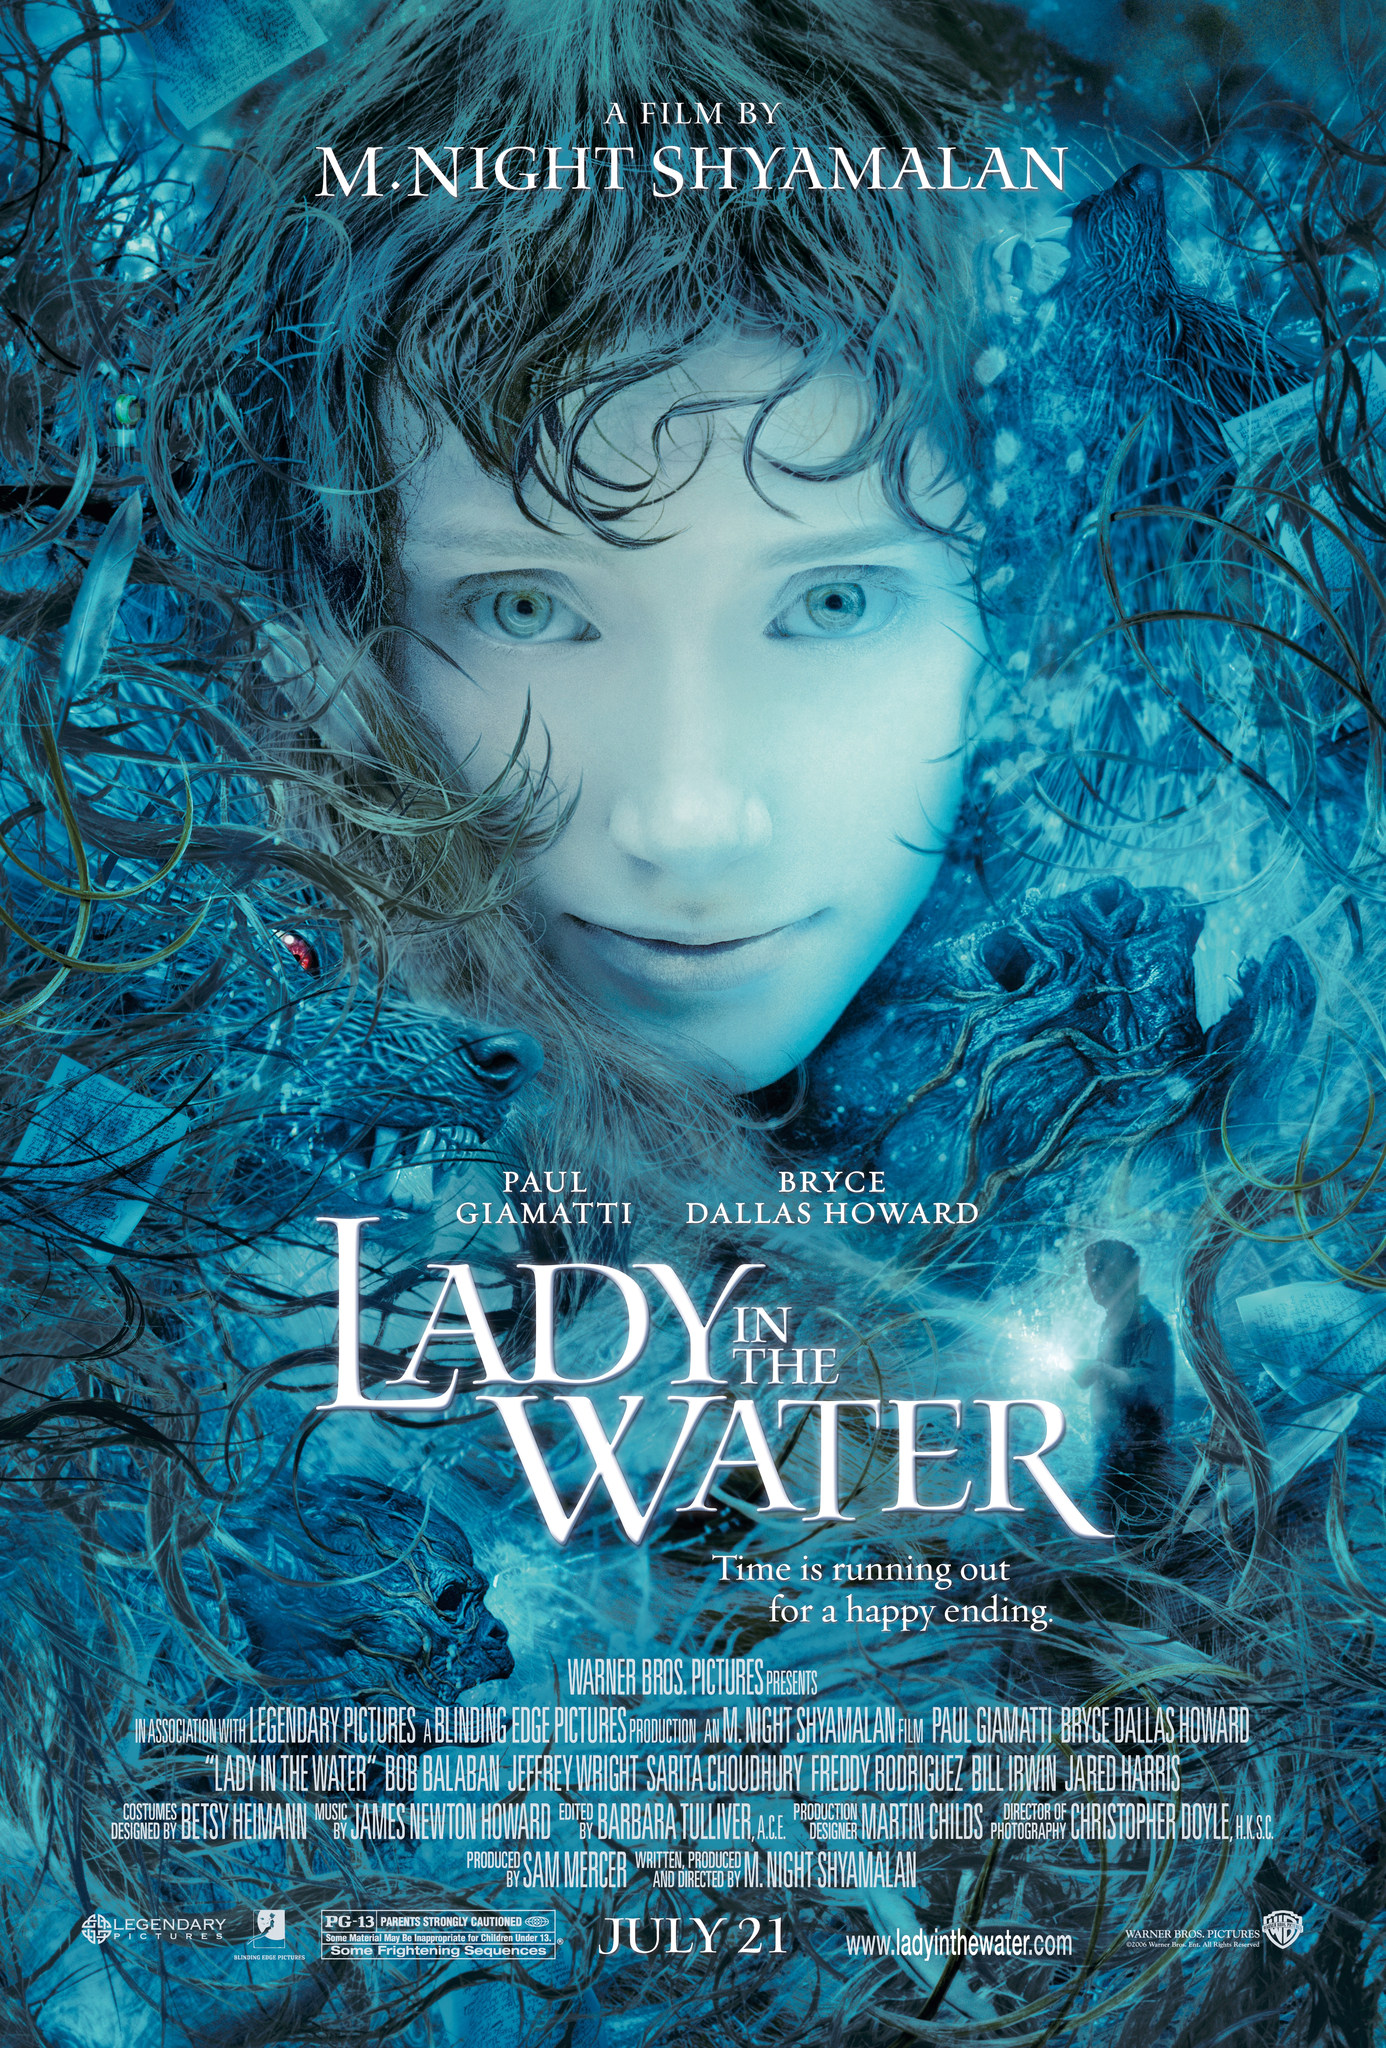 Lady in The Water (2006) ผู้หญิงในสายน้ำ นิทานลุ้นระทึก Paul Giamatti